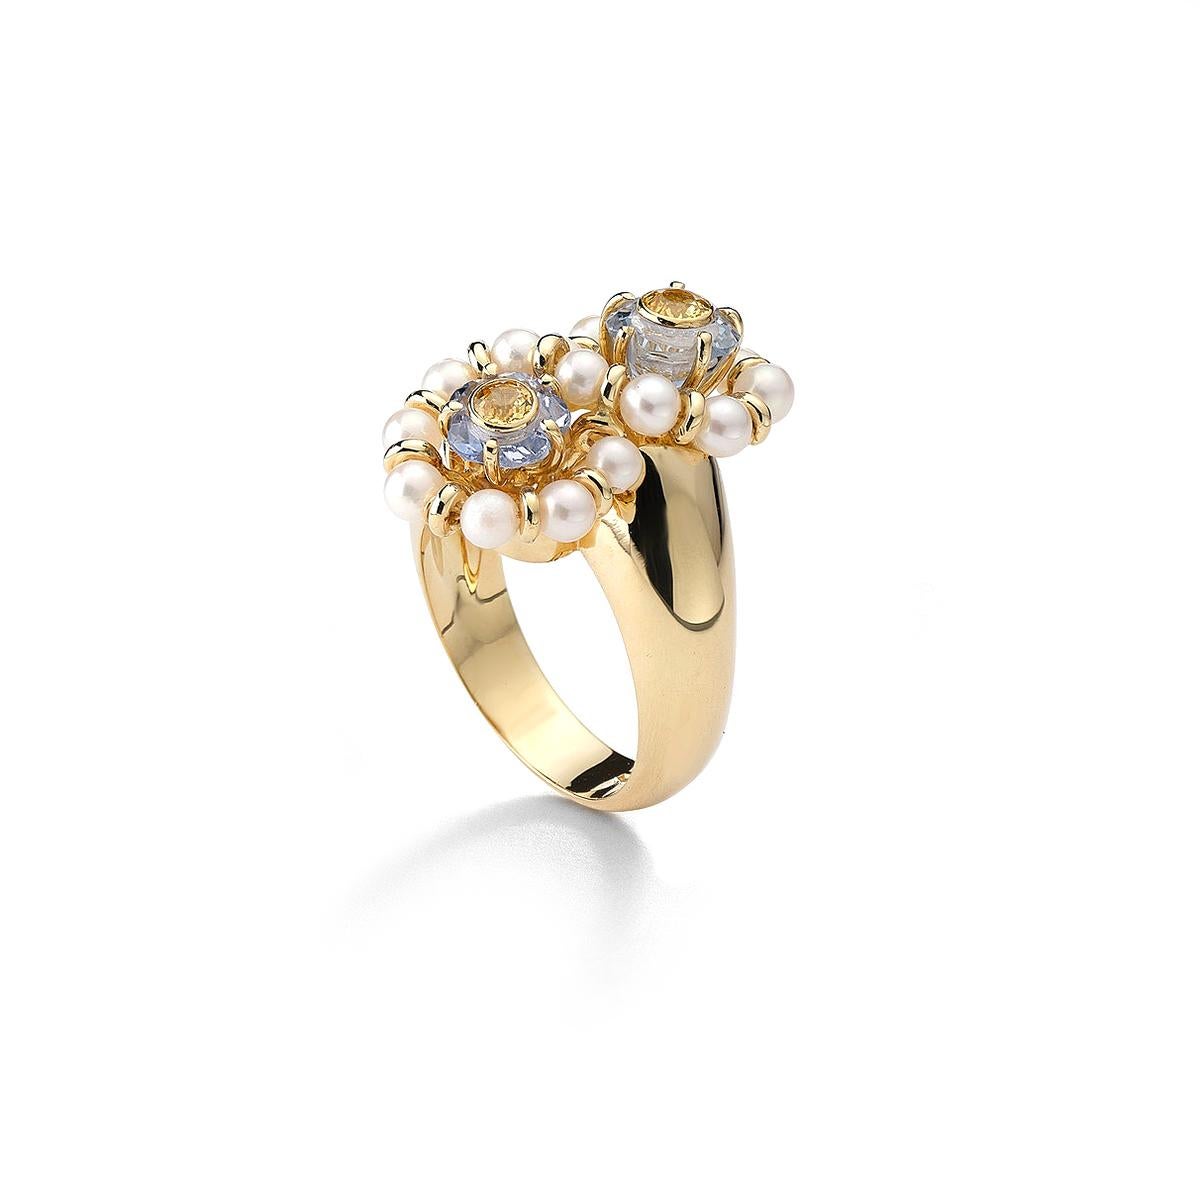 Ring aus 18kt Gelbgold mit 15 Perlen 4,00 ct und 2 farbigen Steinen 3,76 ct Größe 56  